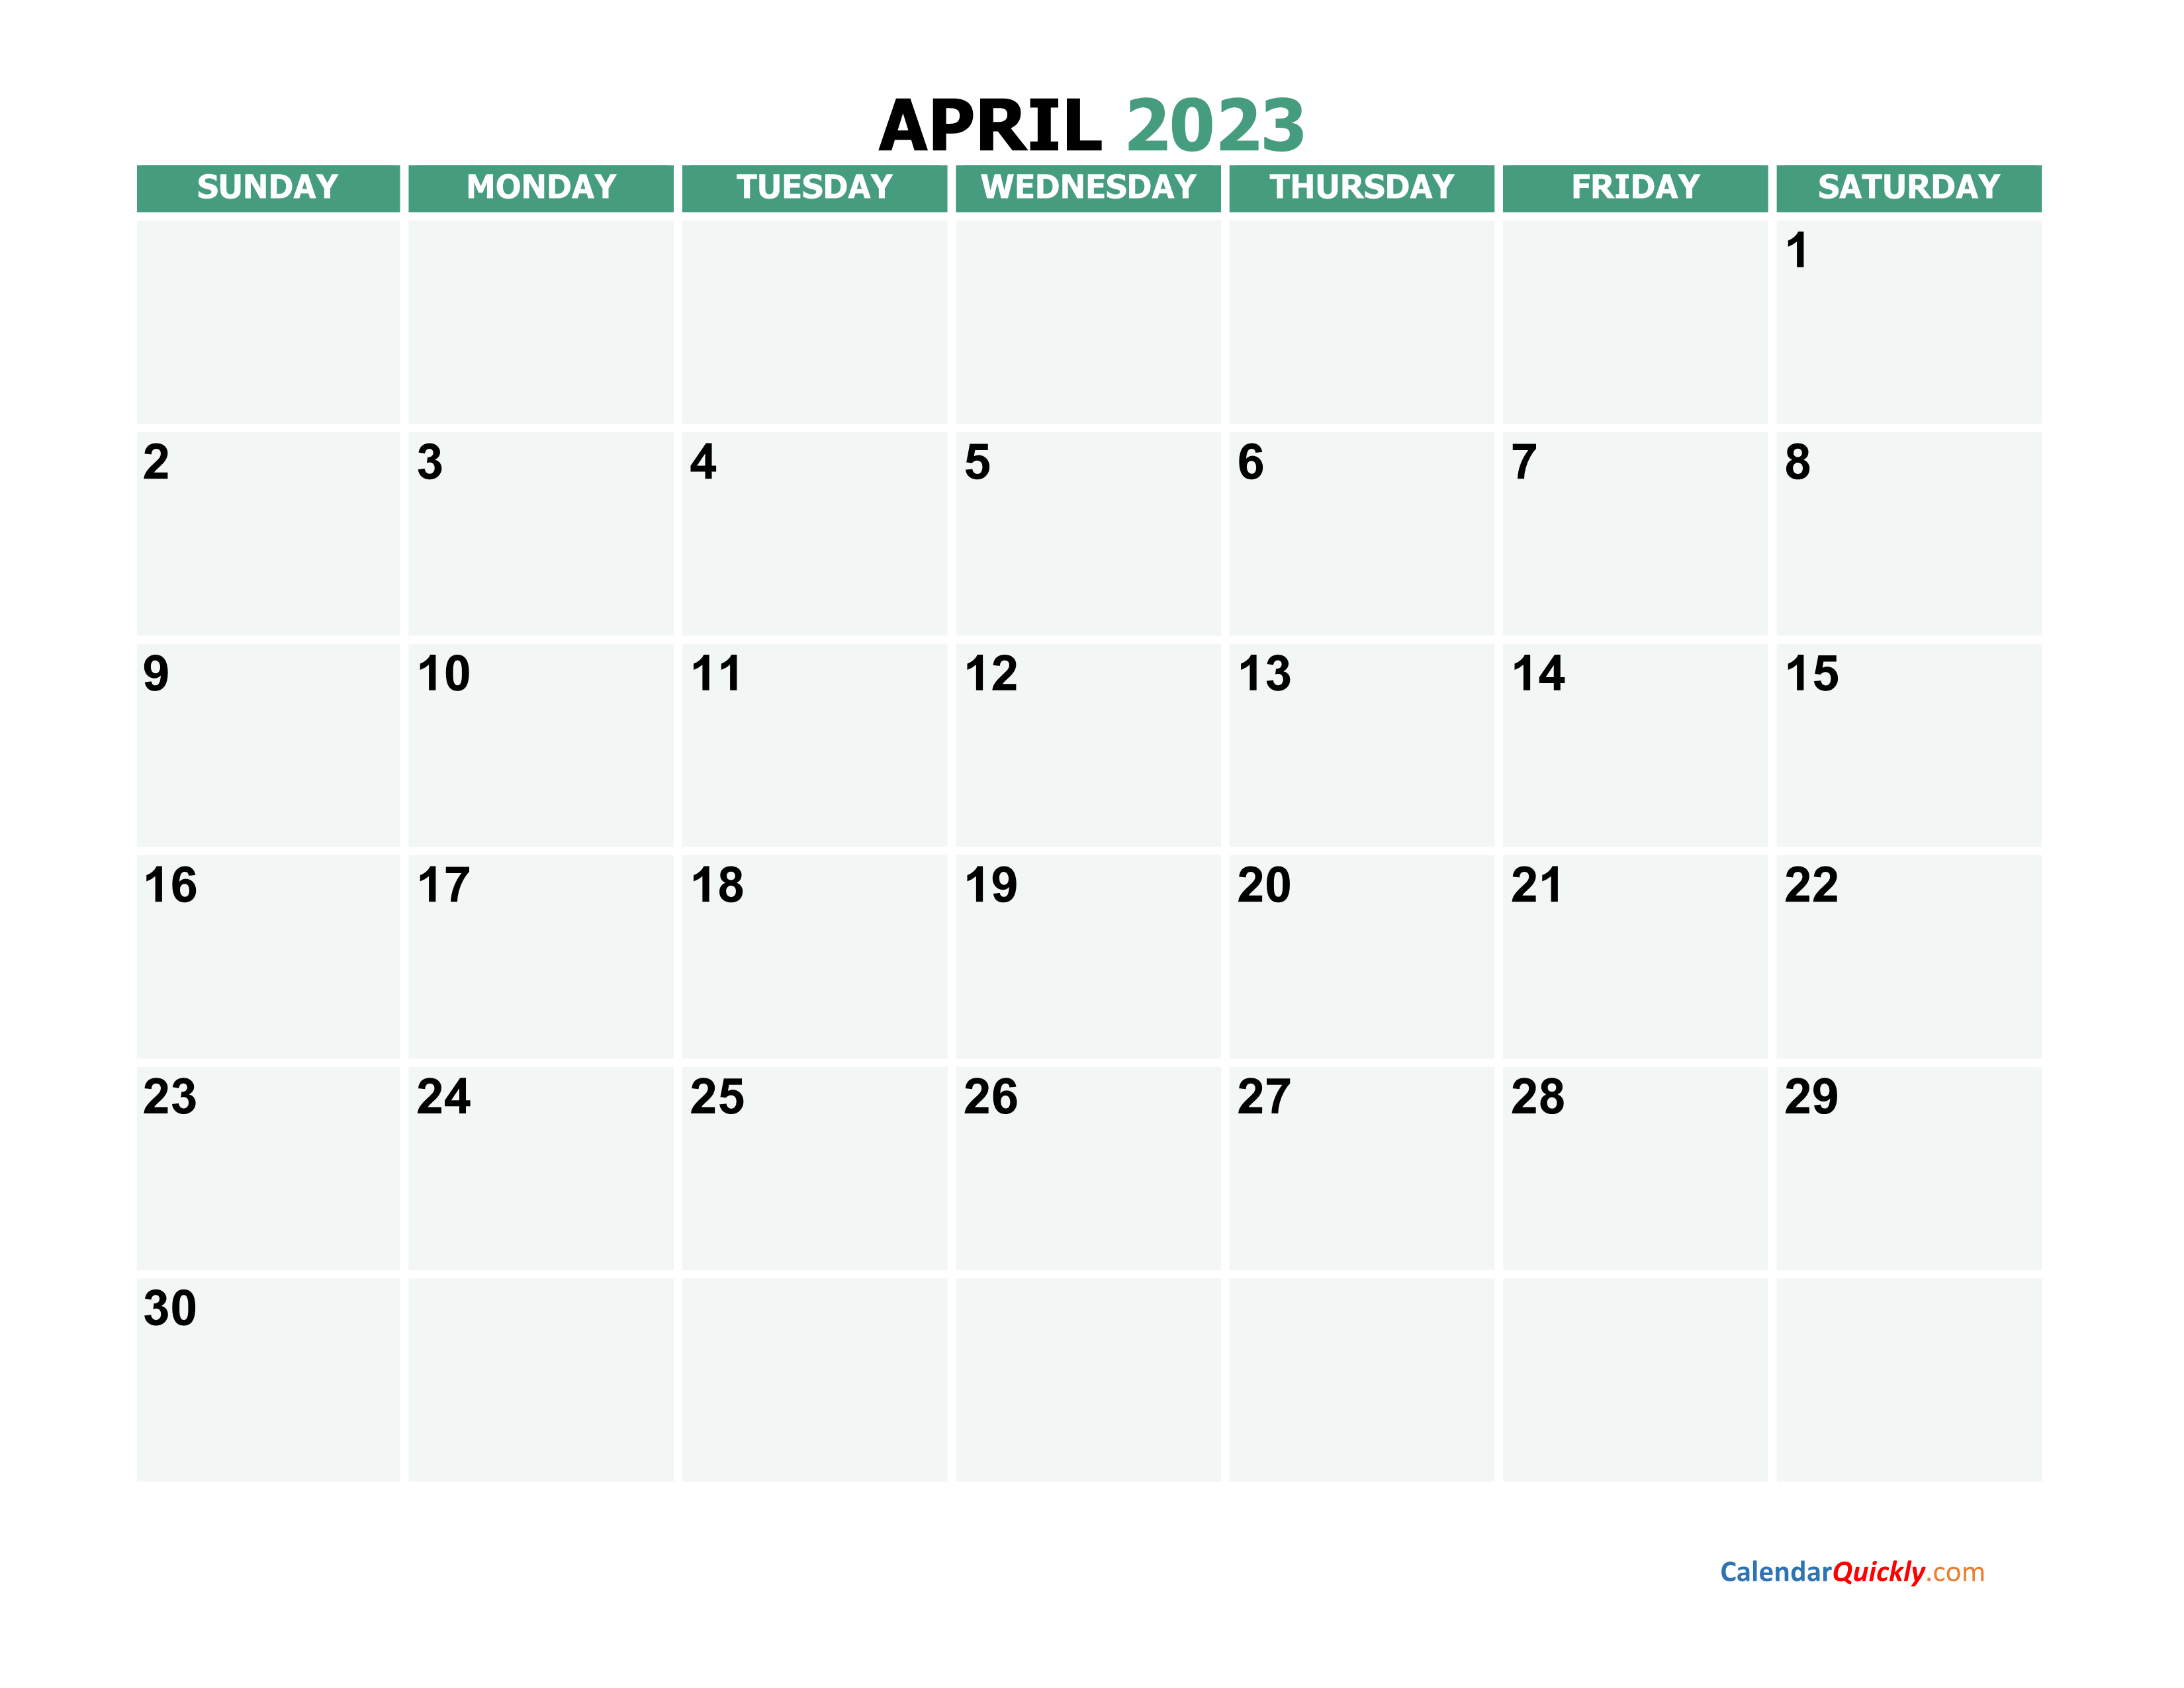 April 2023 Calendars | Calendar Quickly